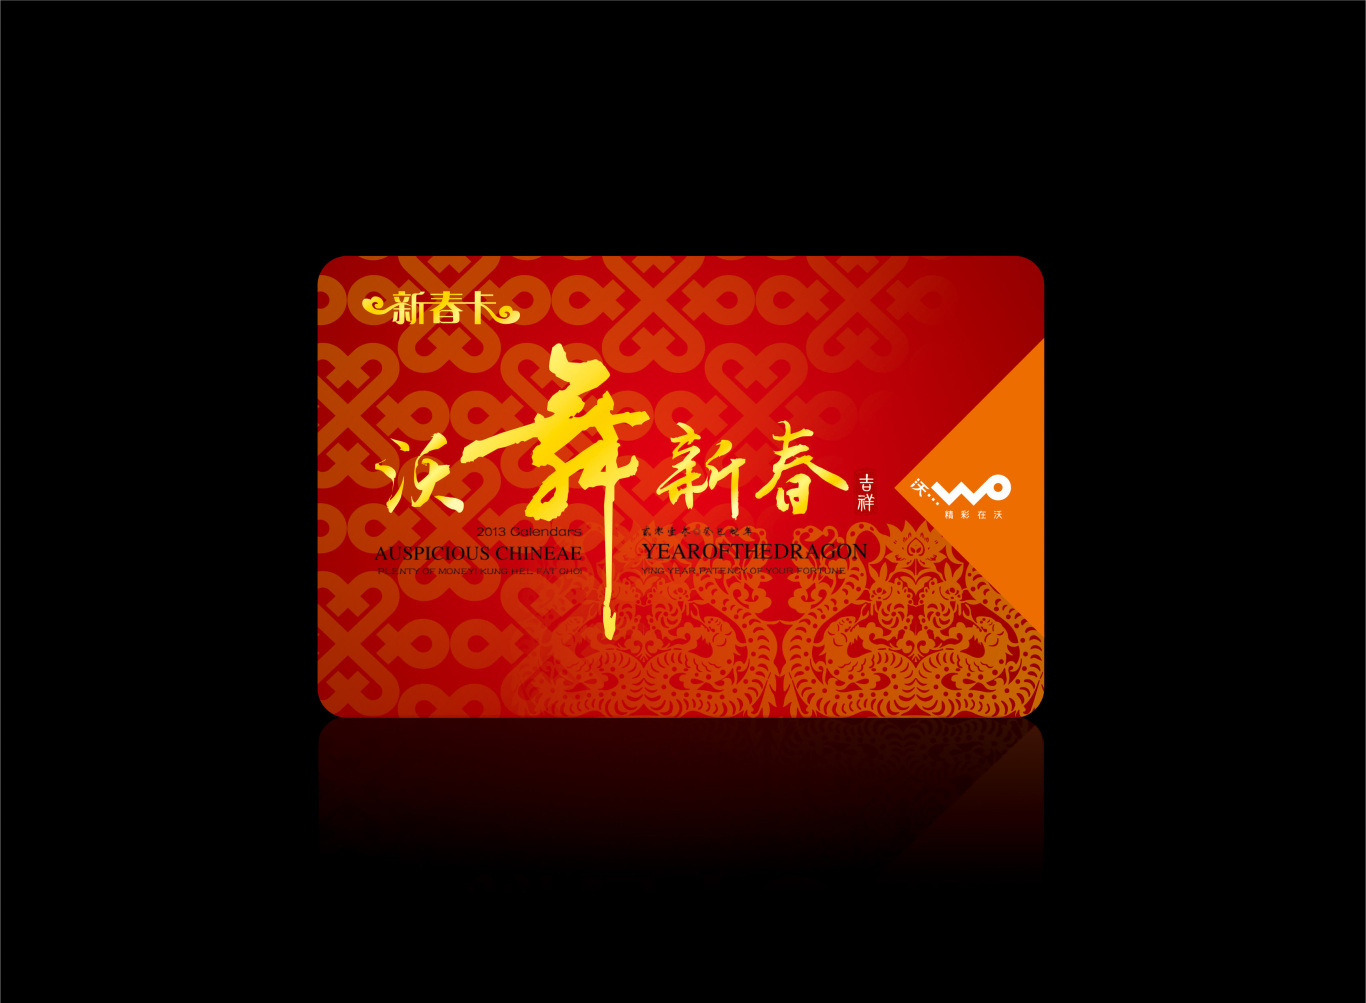 沃舞新春--中国联通江西分公司2013年新春促销海报图0